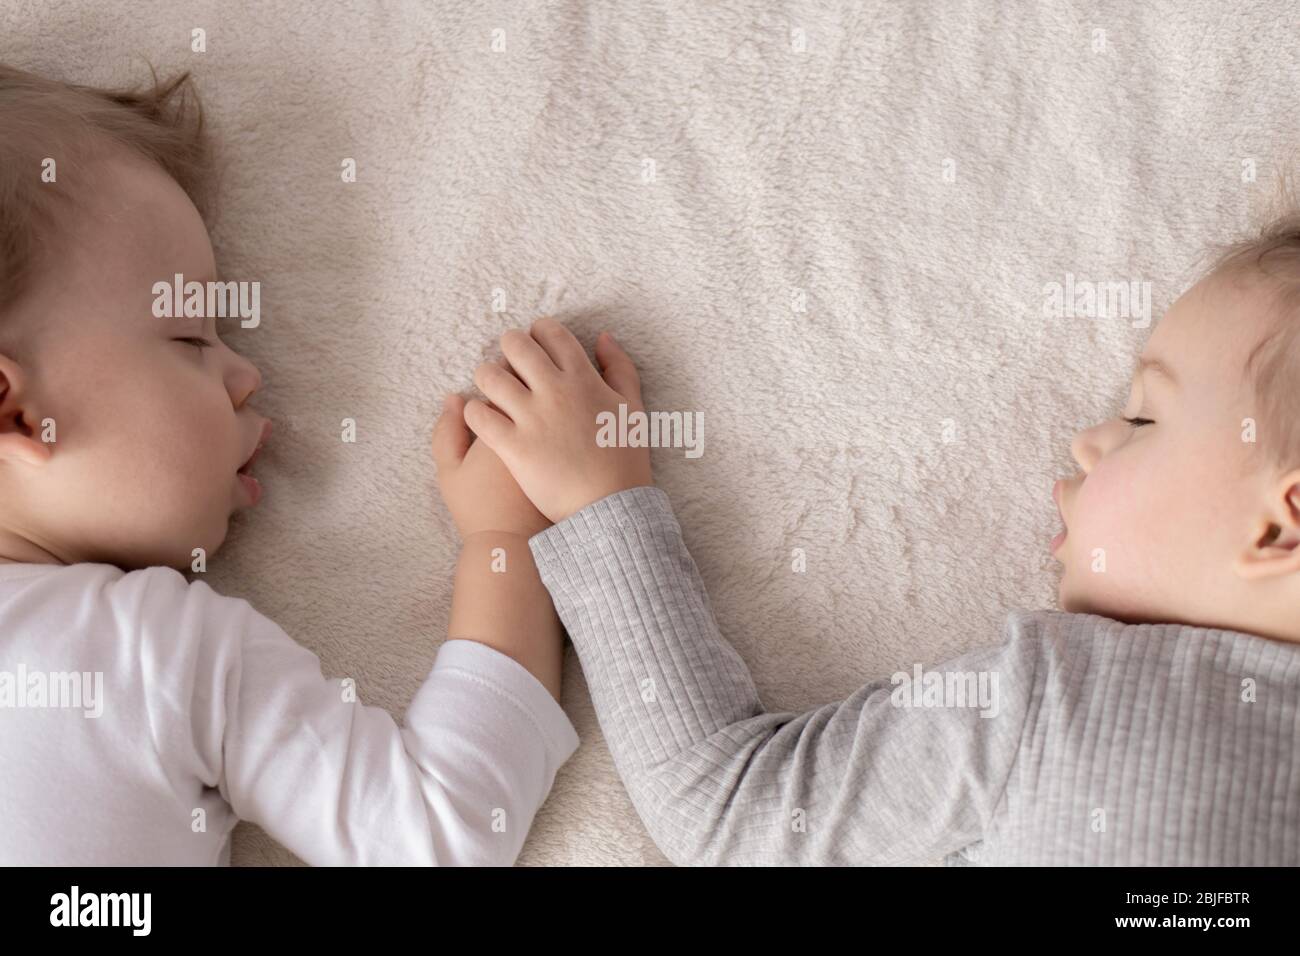 Kindheit, Schlaf, Entspannung, Familie, Lifestyle-Konzept - zwei kleine Kinder im Alter von 2 und 3 Jahren in weiß-beigem Body schlafen auf einem beige Stockfoto